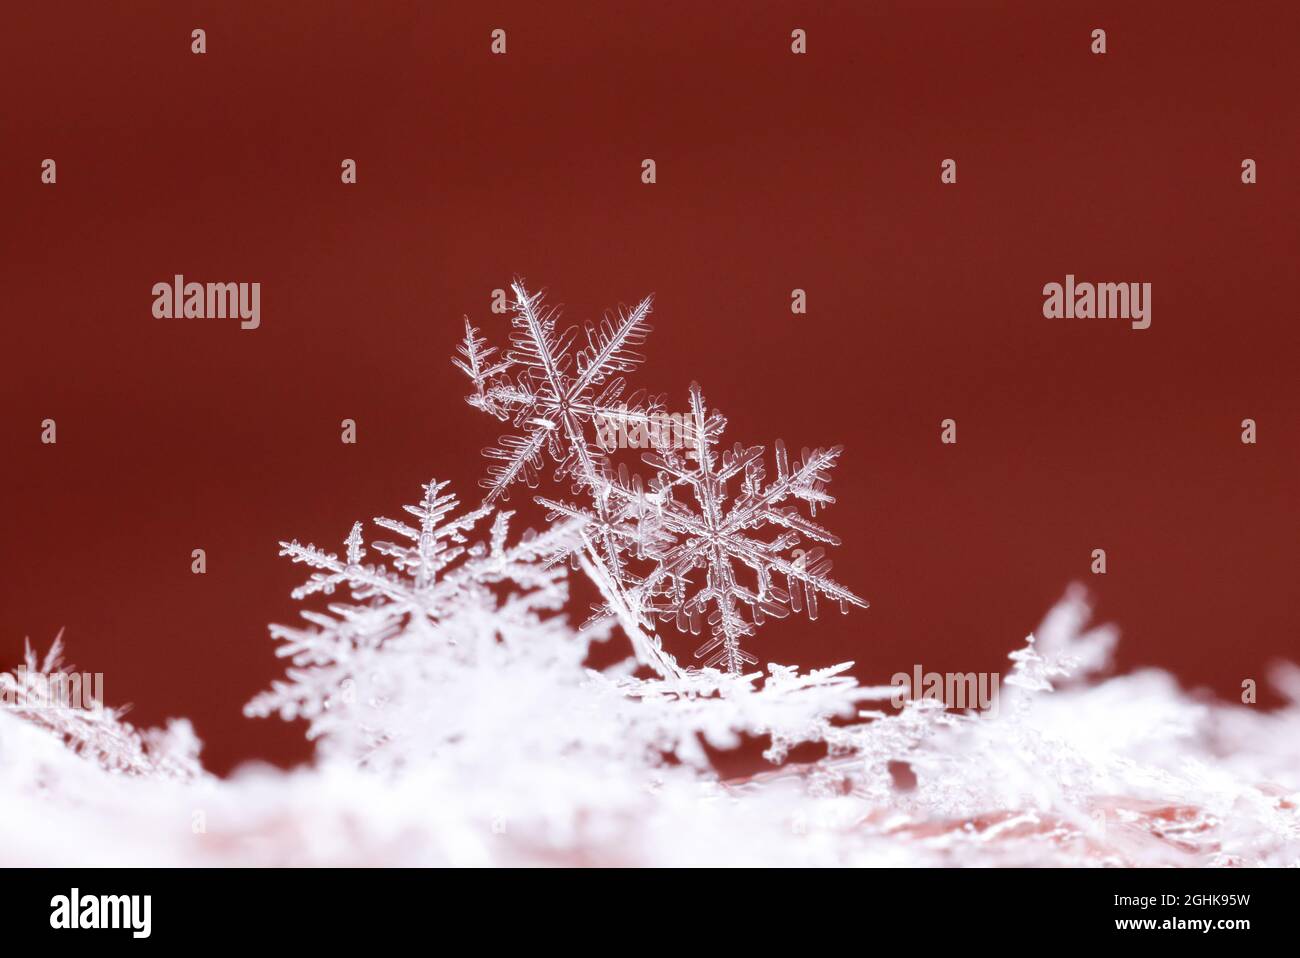 Snowflakes Stock Photo